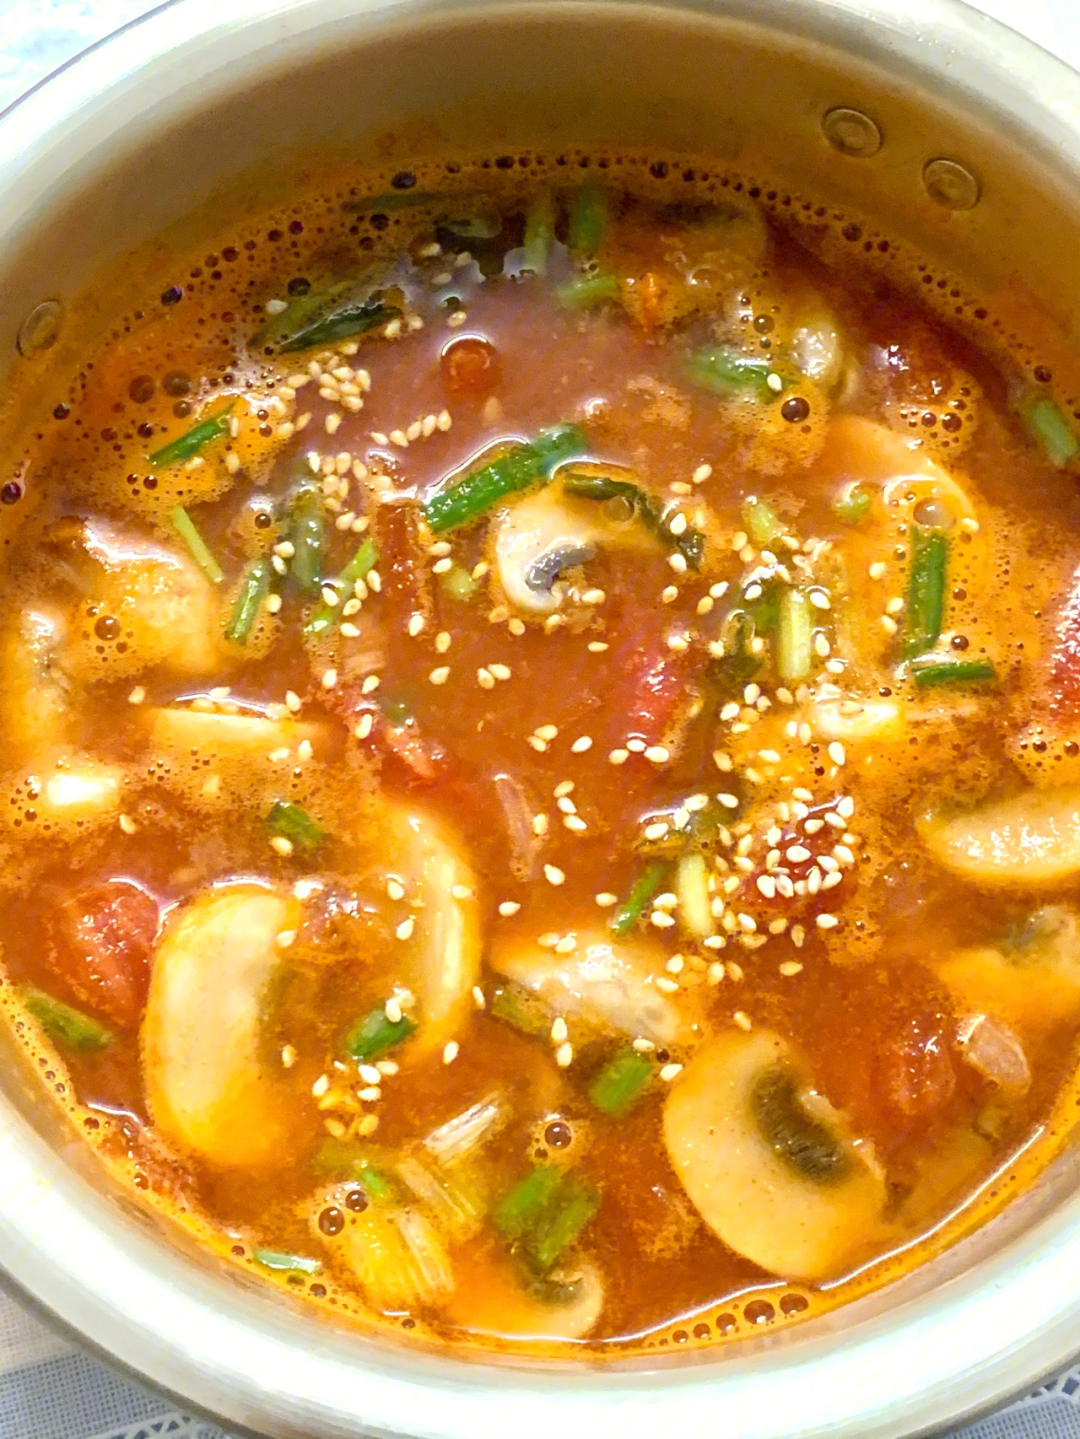 也有中式酸辣汤的味道绝了～大概做法9303一些新鲜的虾,把虾头和